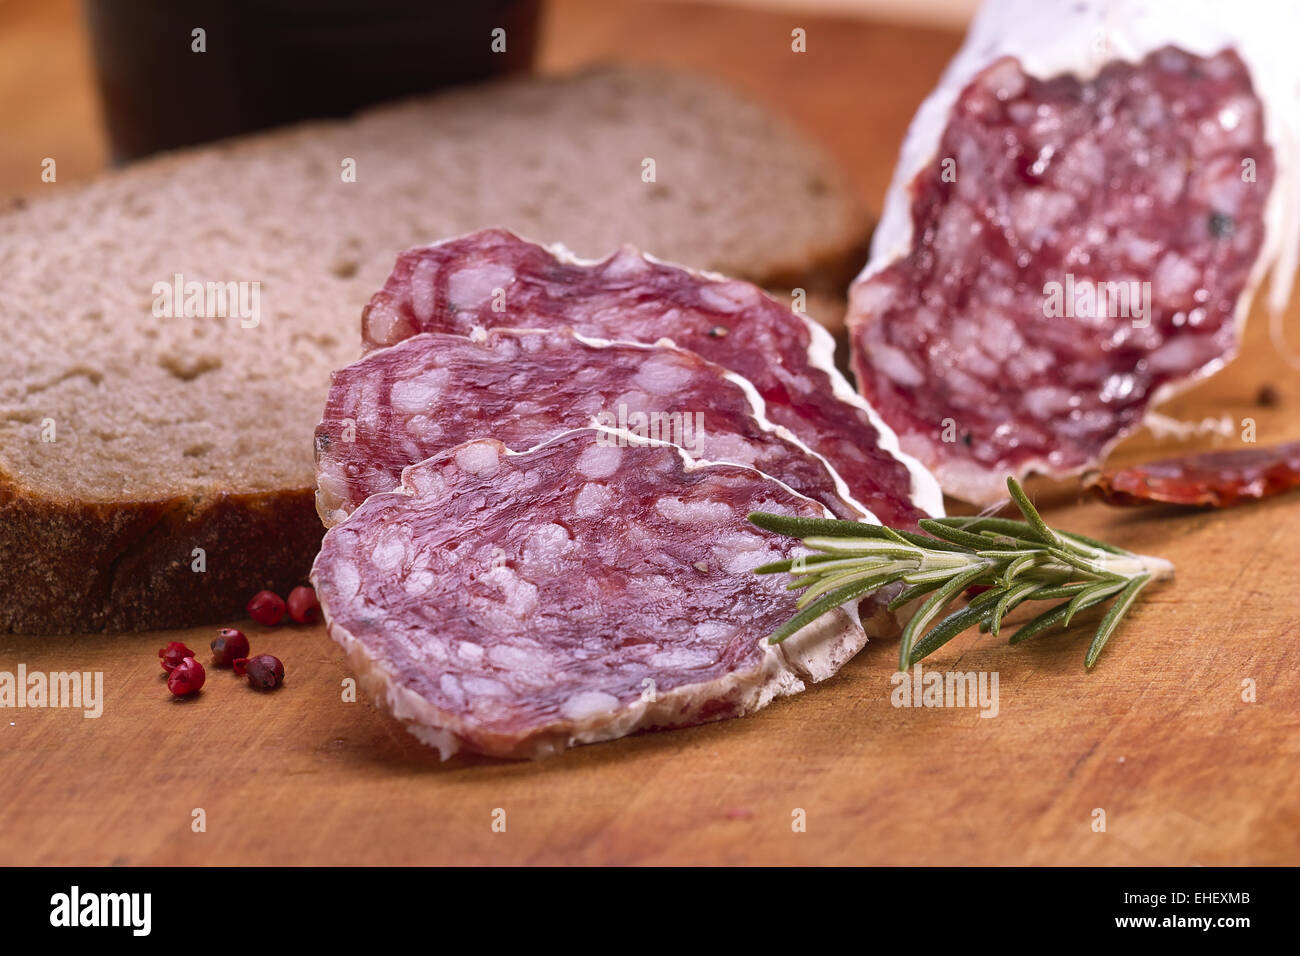 salami sausages Stock Photo